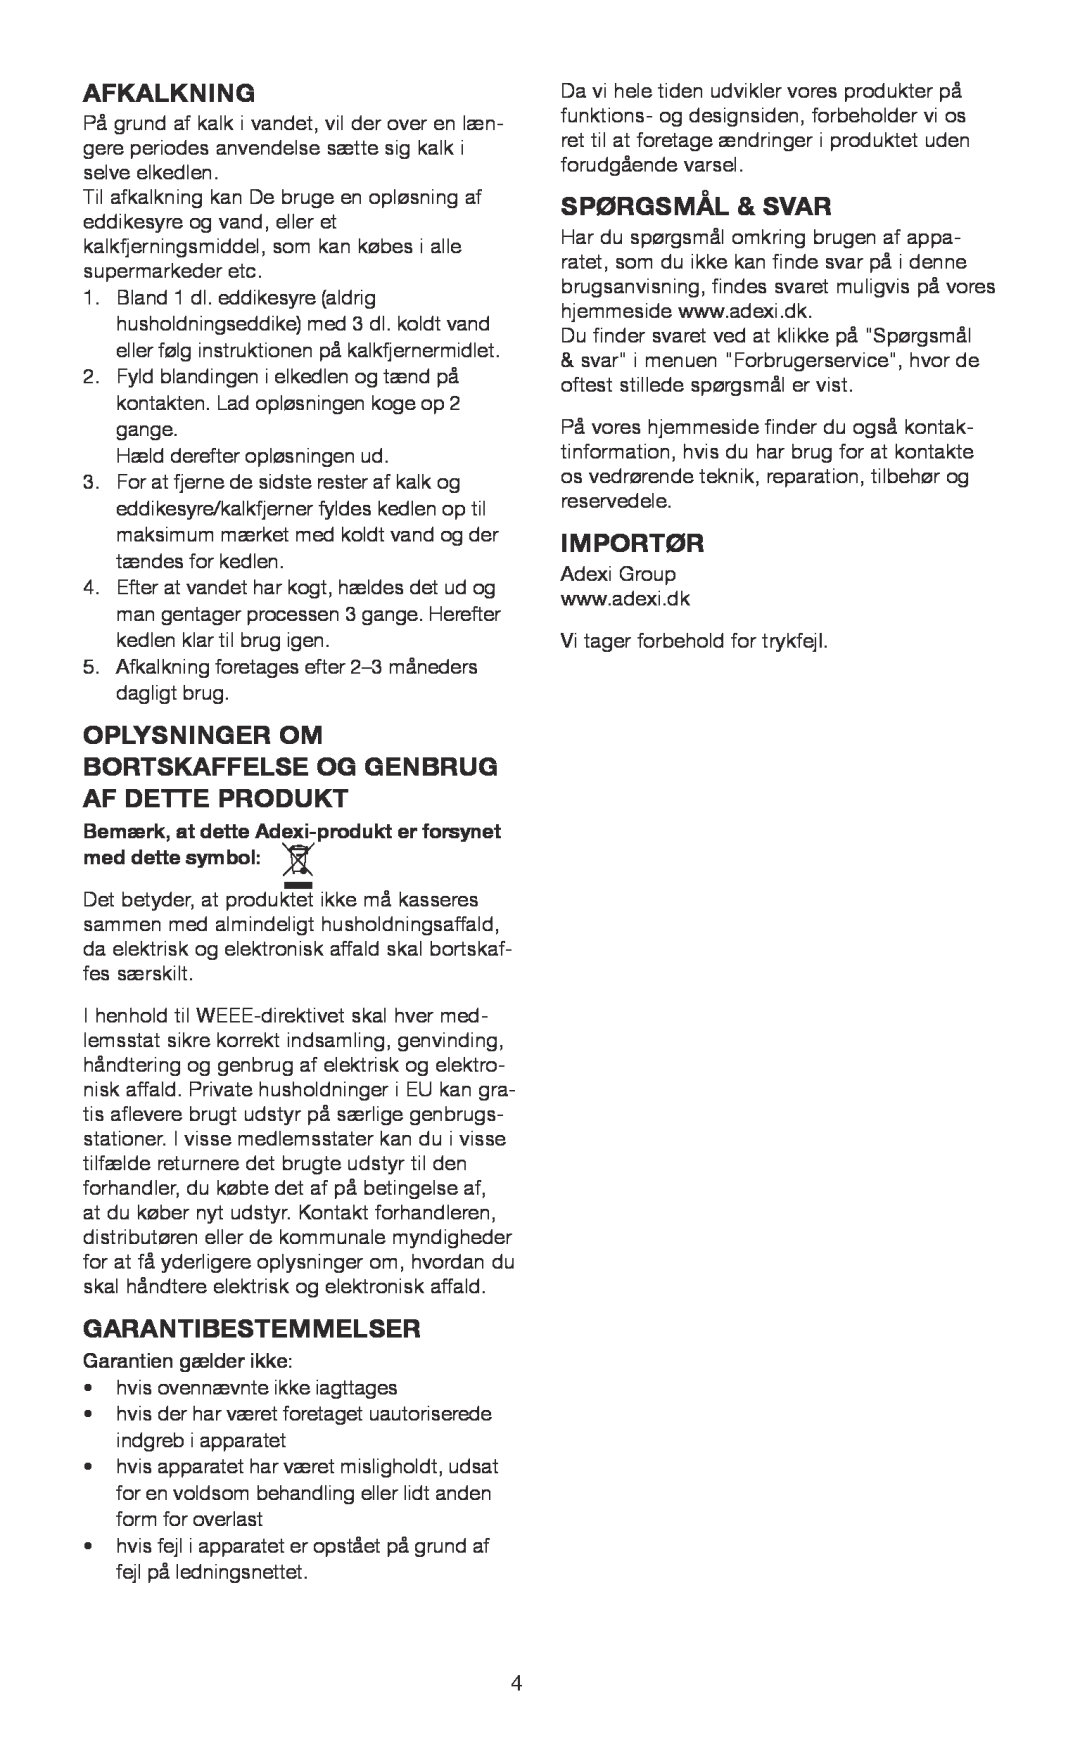 Melissa 745-153 manual Afkalkning, Garantibestemmelser, Spørgsmål & Svar, Importør 